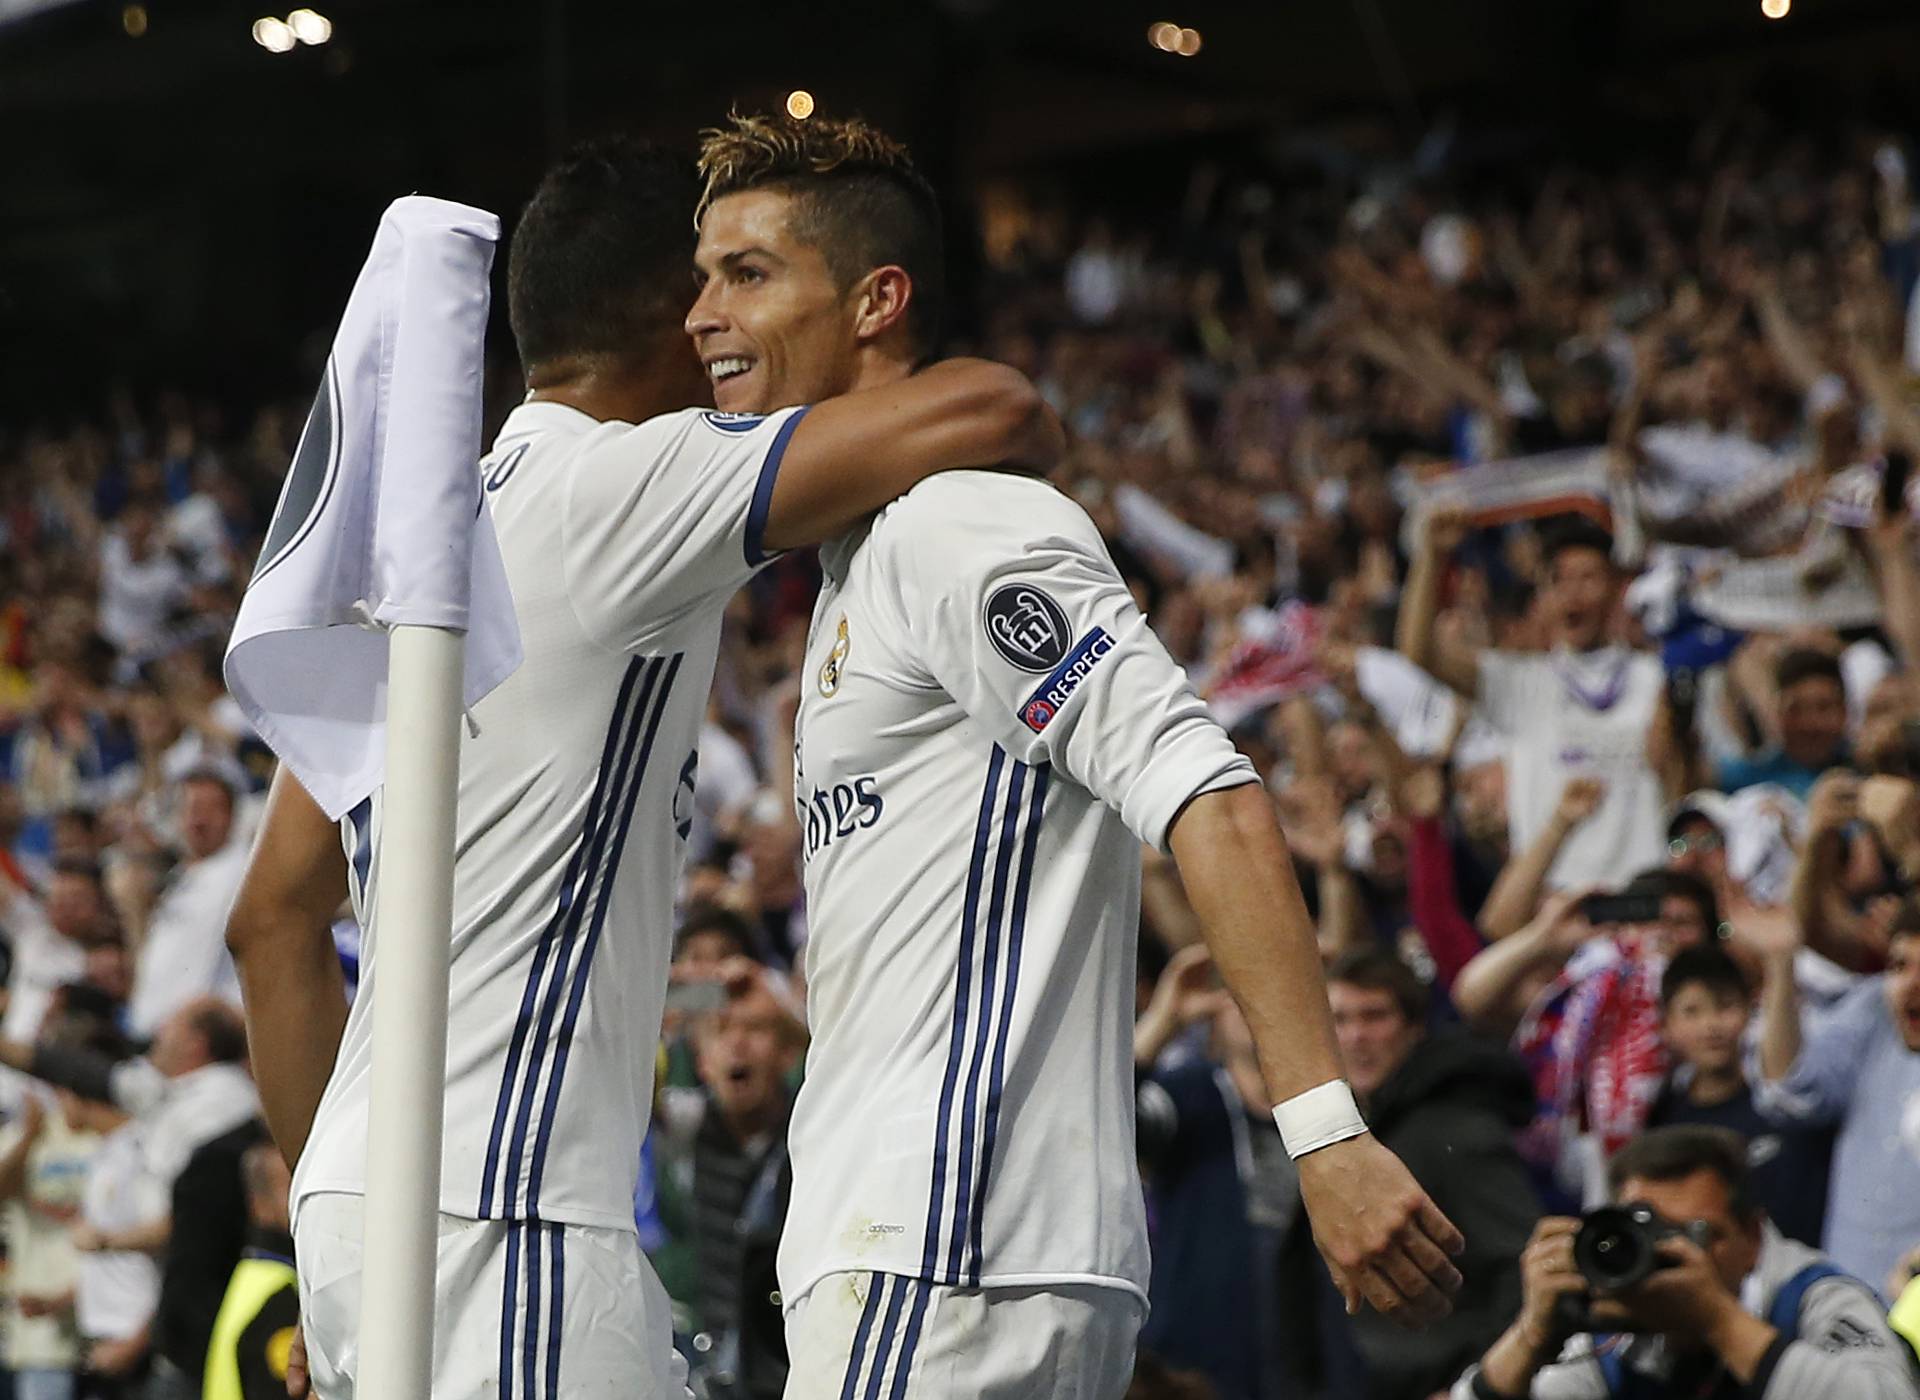 Real Madrid's Cristiano Ronaldo celebrates scoring their third goal